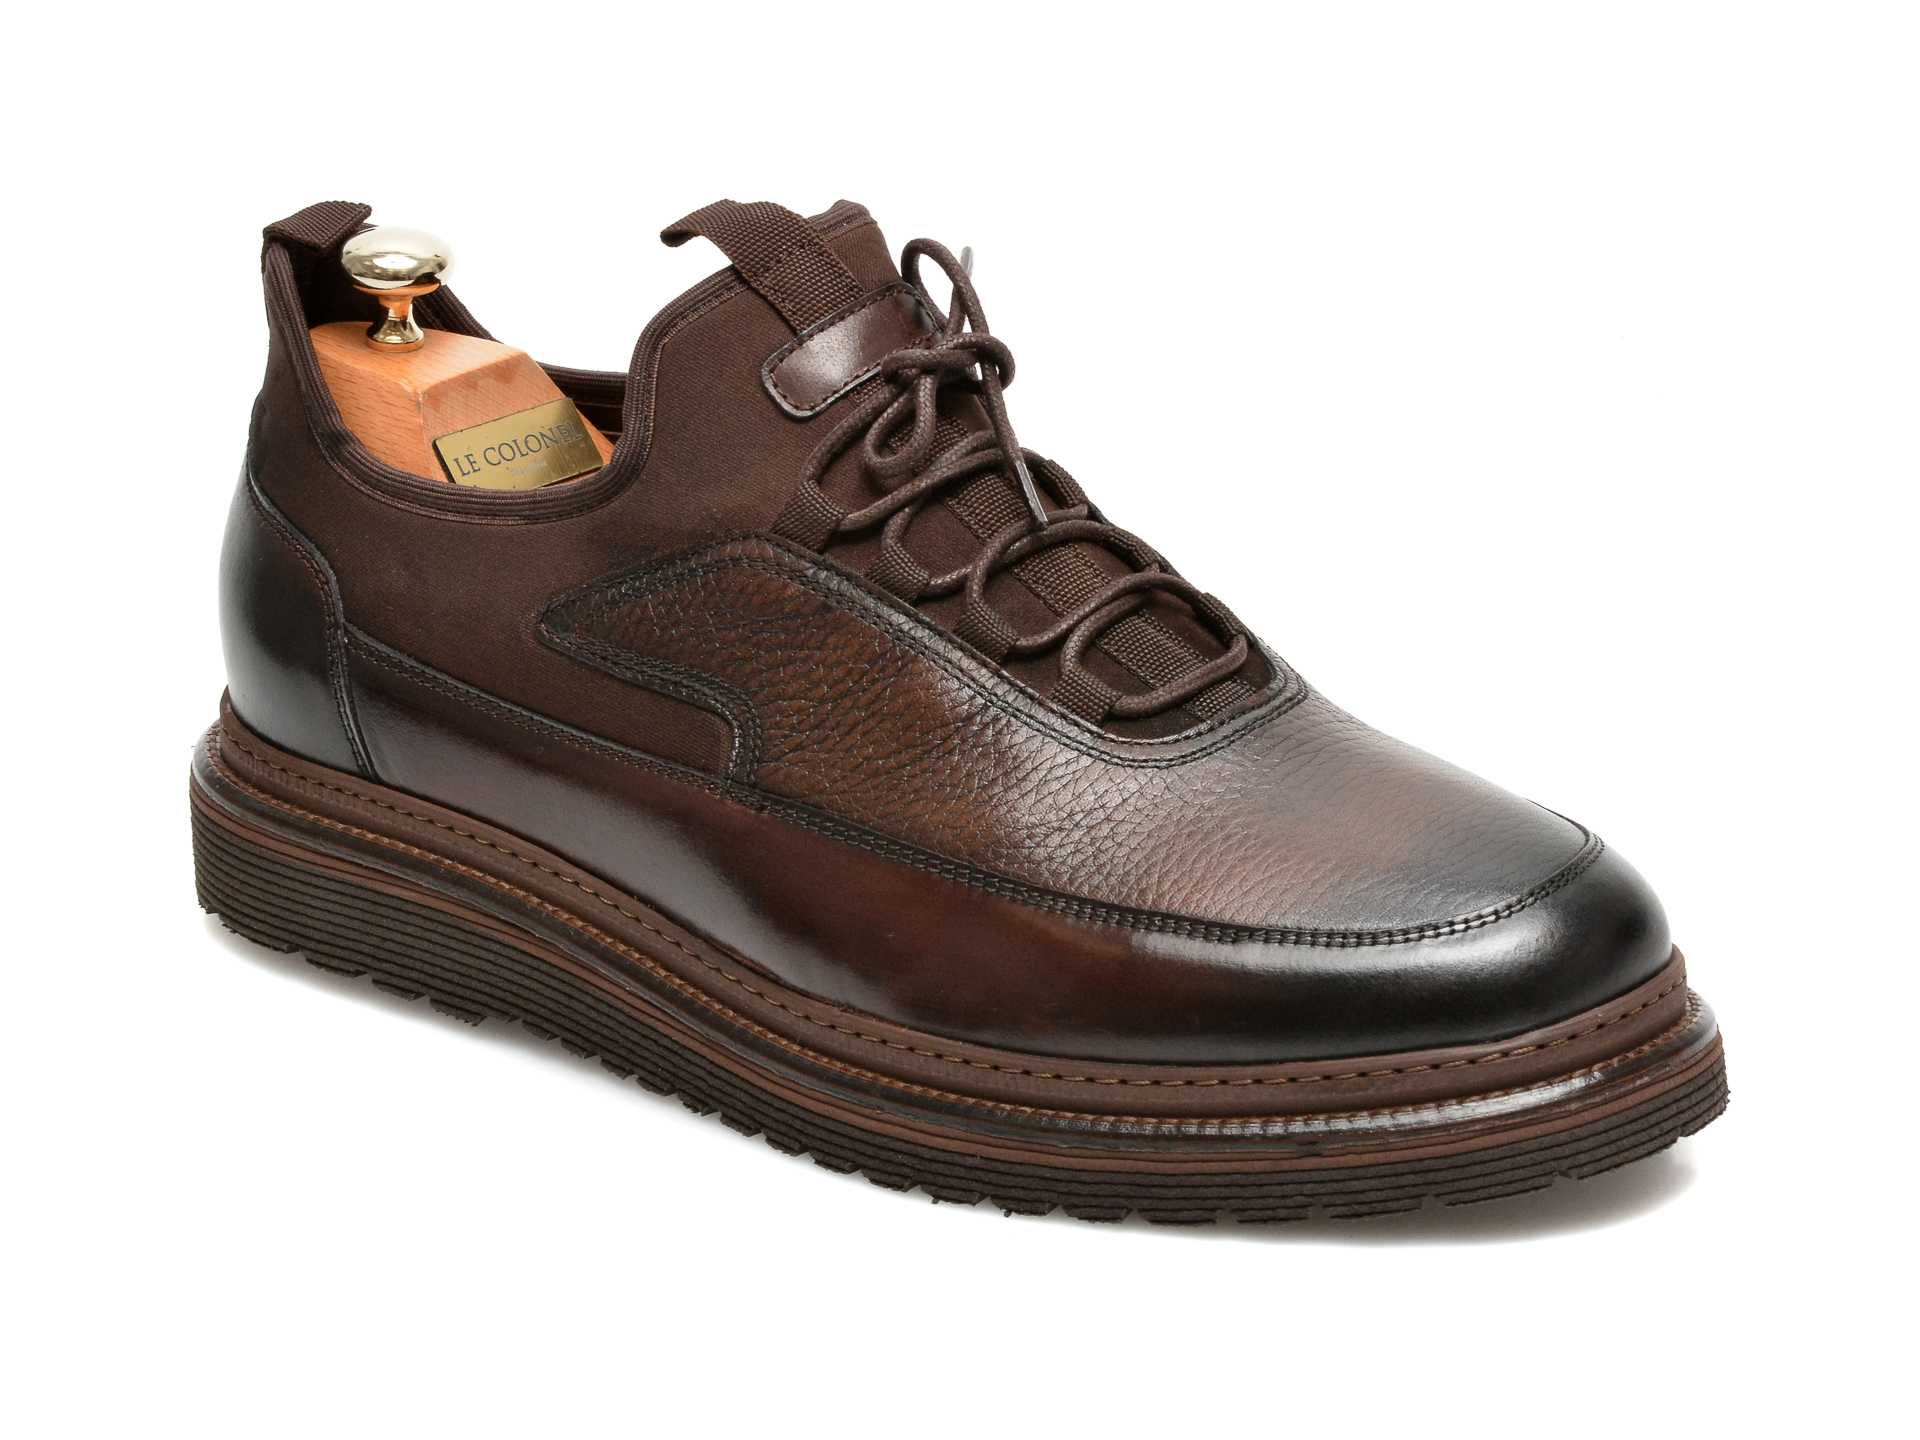 Pantofi LE COLONEL maro, 64816, din material textil si piele naturala Le Colonel imagine 2022 13clothing.ro